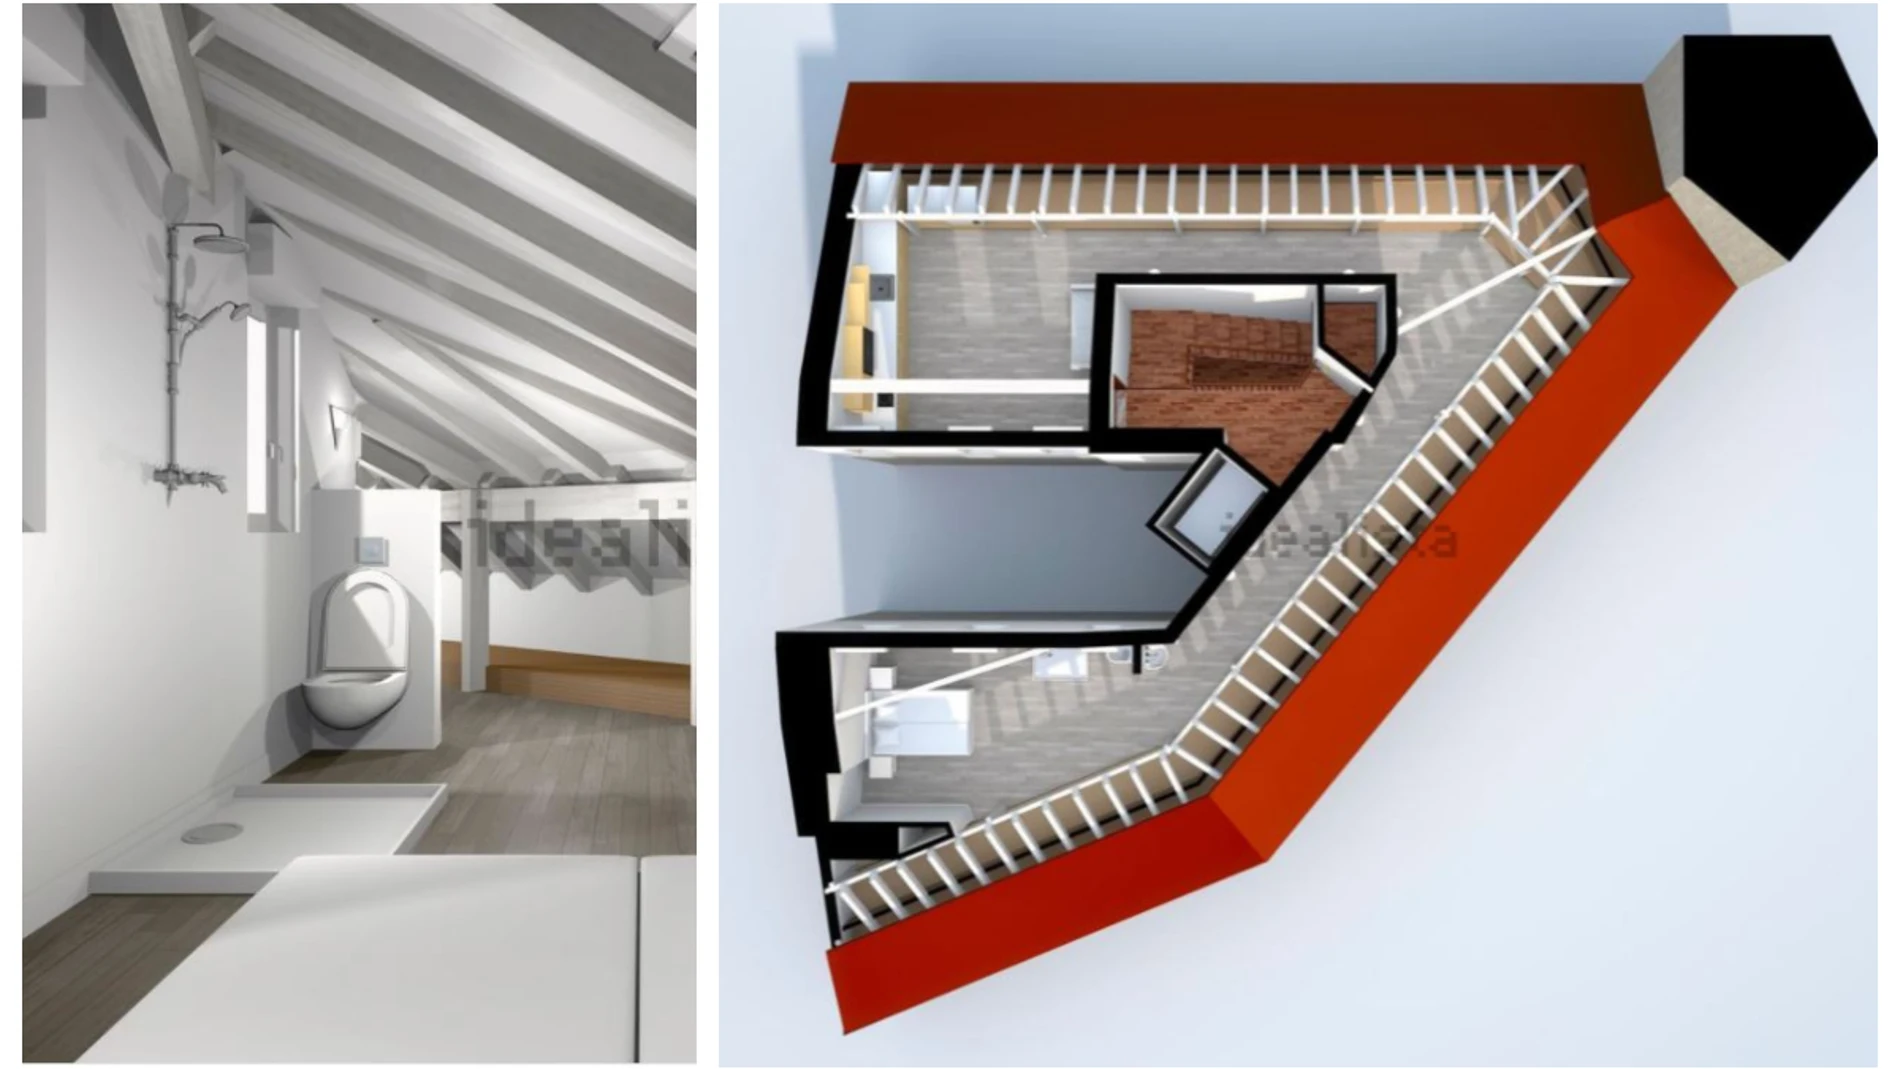 Anuncio de Idealista: Se vende piso en Bilbao de 120 metros cuadrados con sólo 45 metros útiles